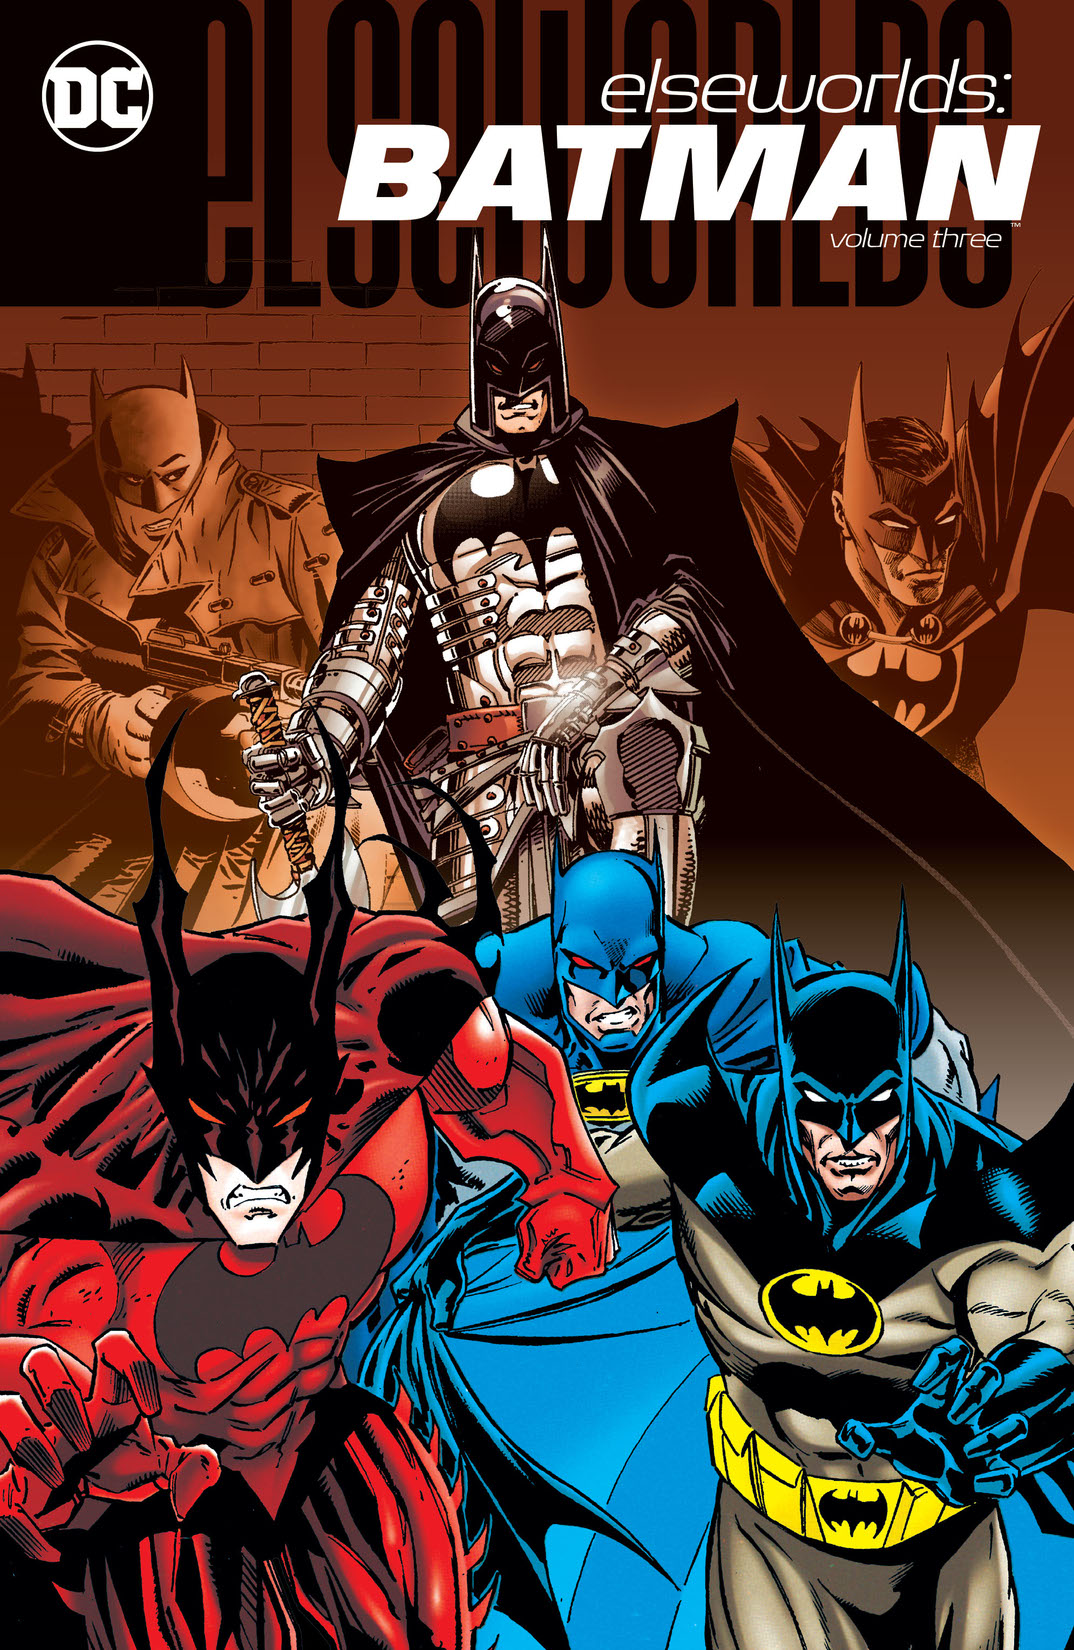 Elseworlds: Batman Vol. 3 preview images